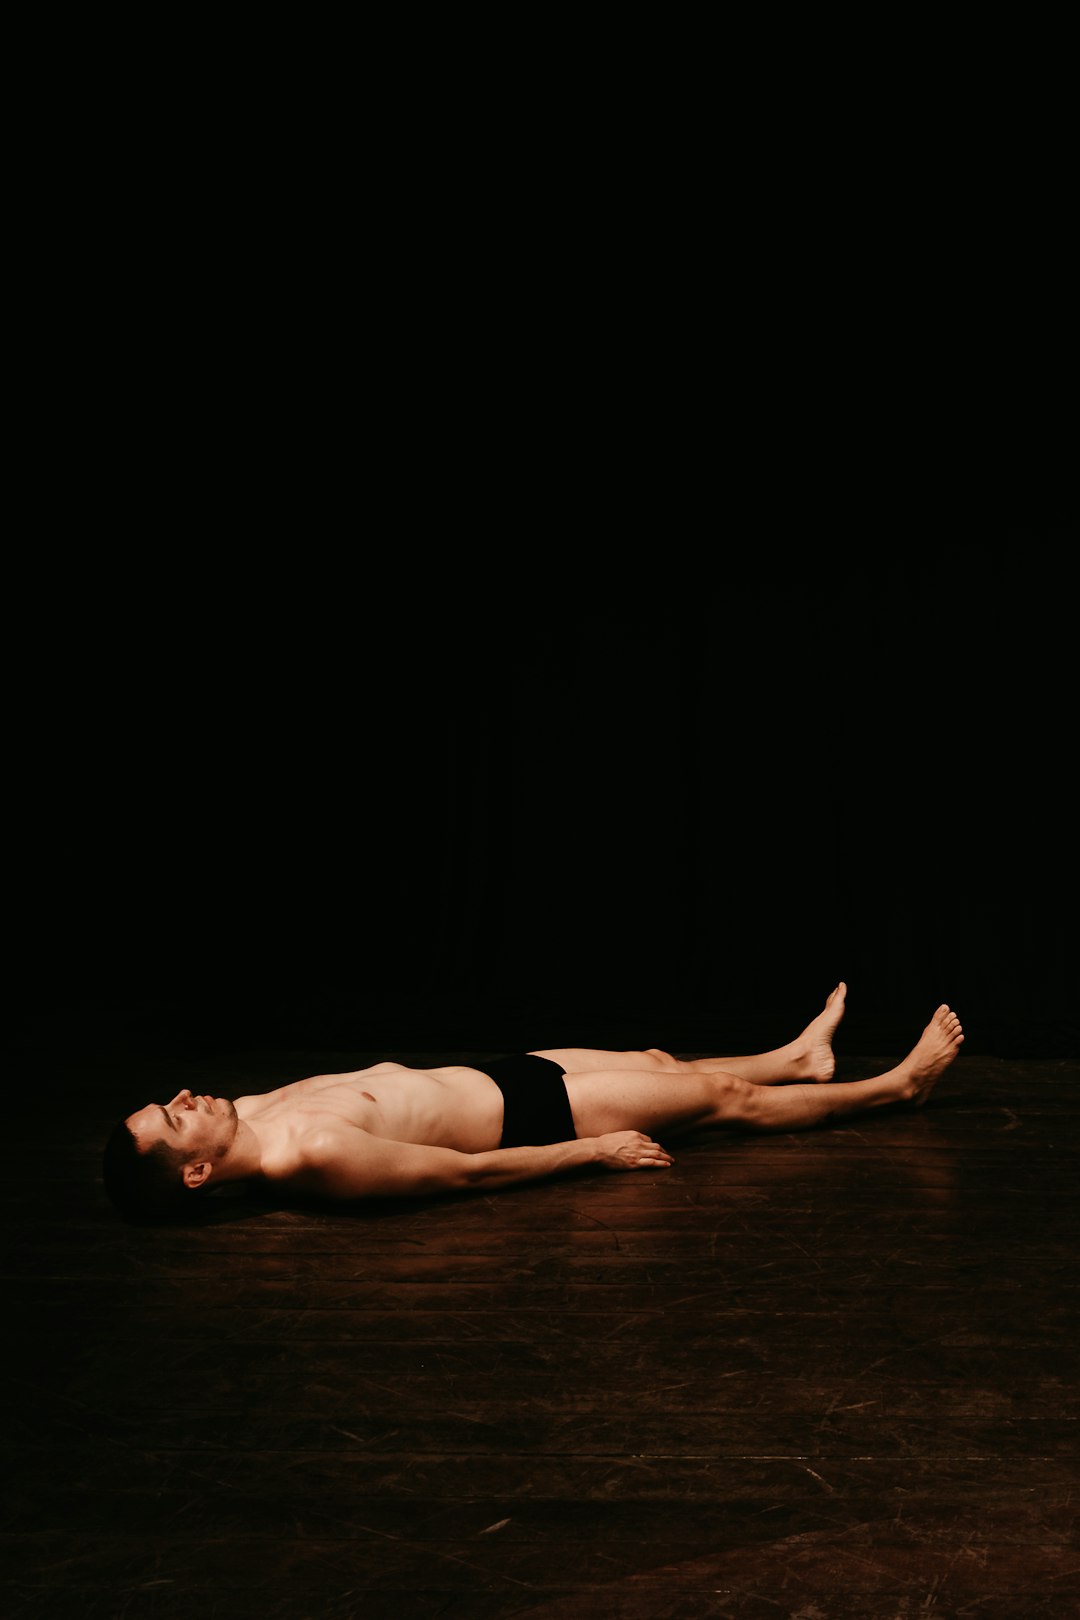 woman in black panty lying on floor